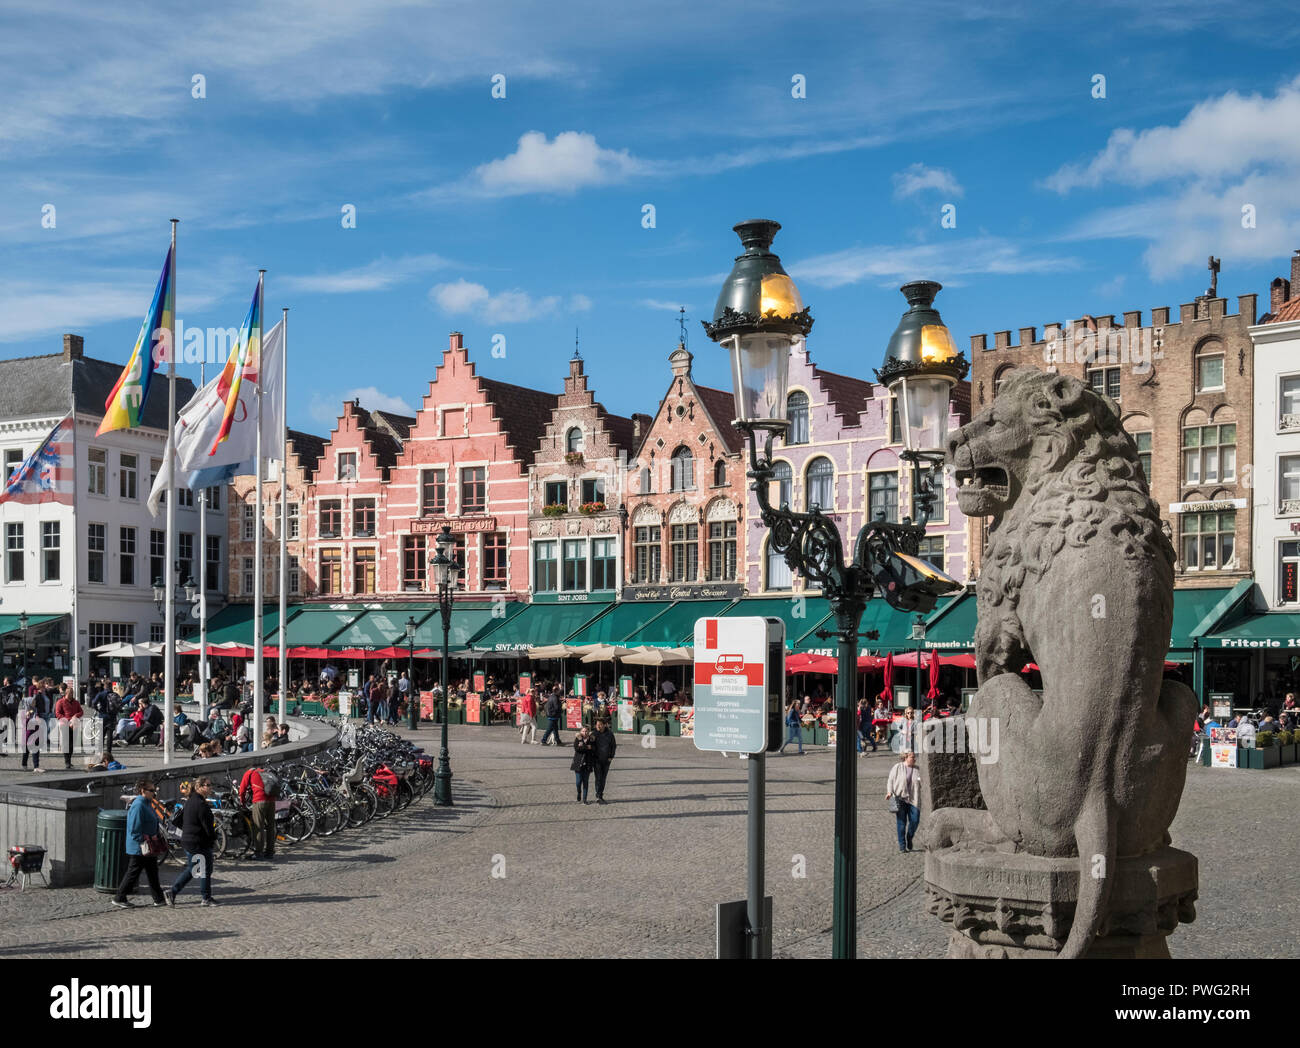 Scène de rue à la place du marché (Markt) avec une architecture traditionnelle dans la ville médiévale de Bruges, Flandre occidentale, Belgique Banque D'Images